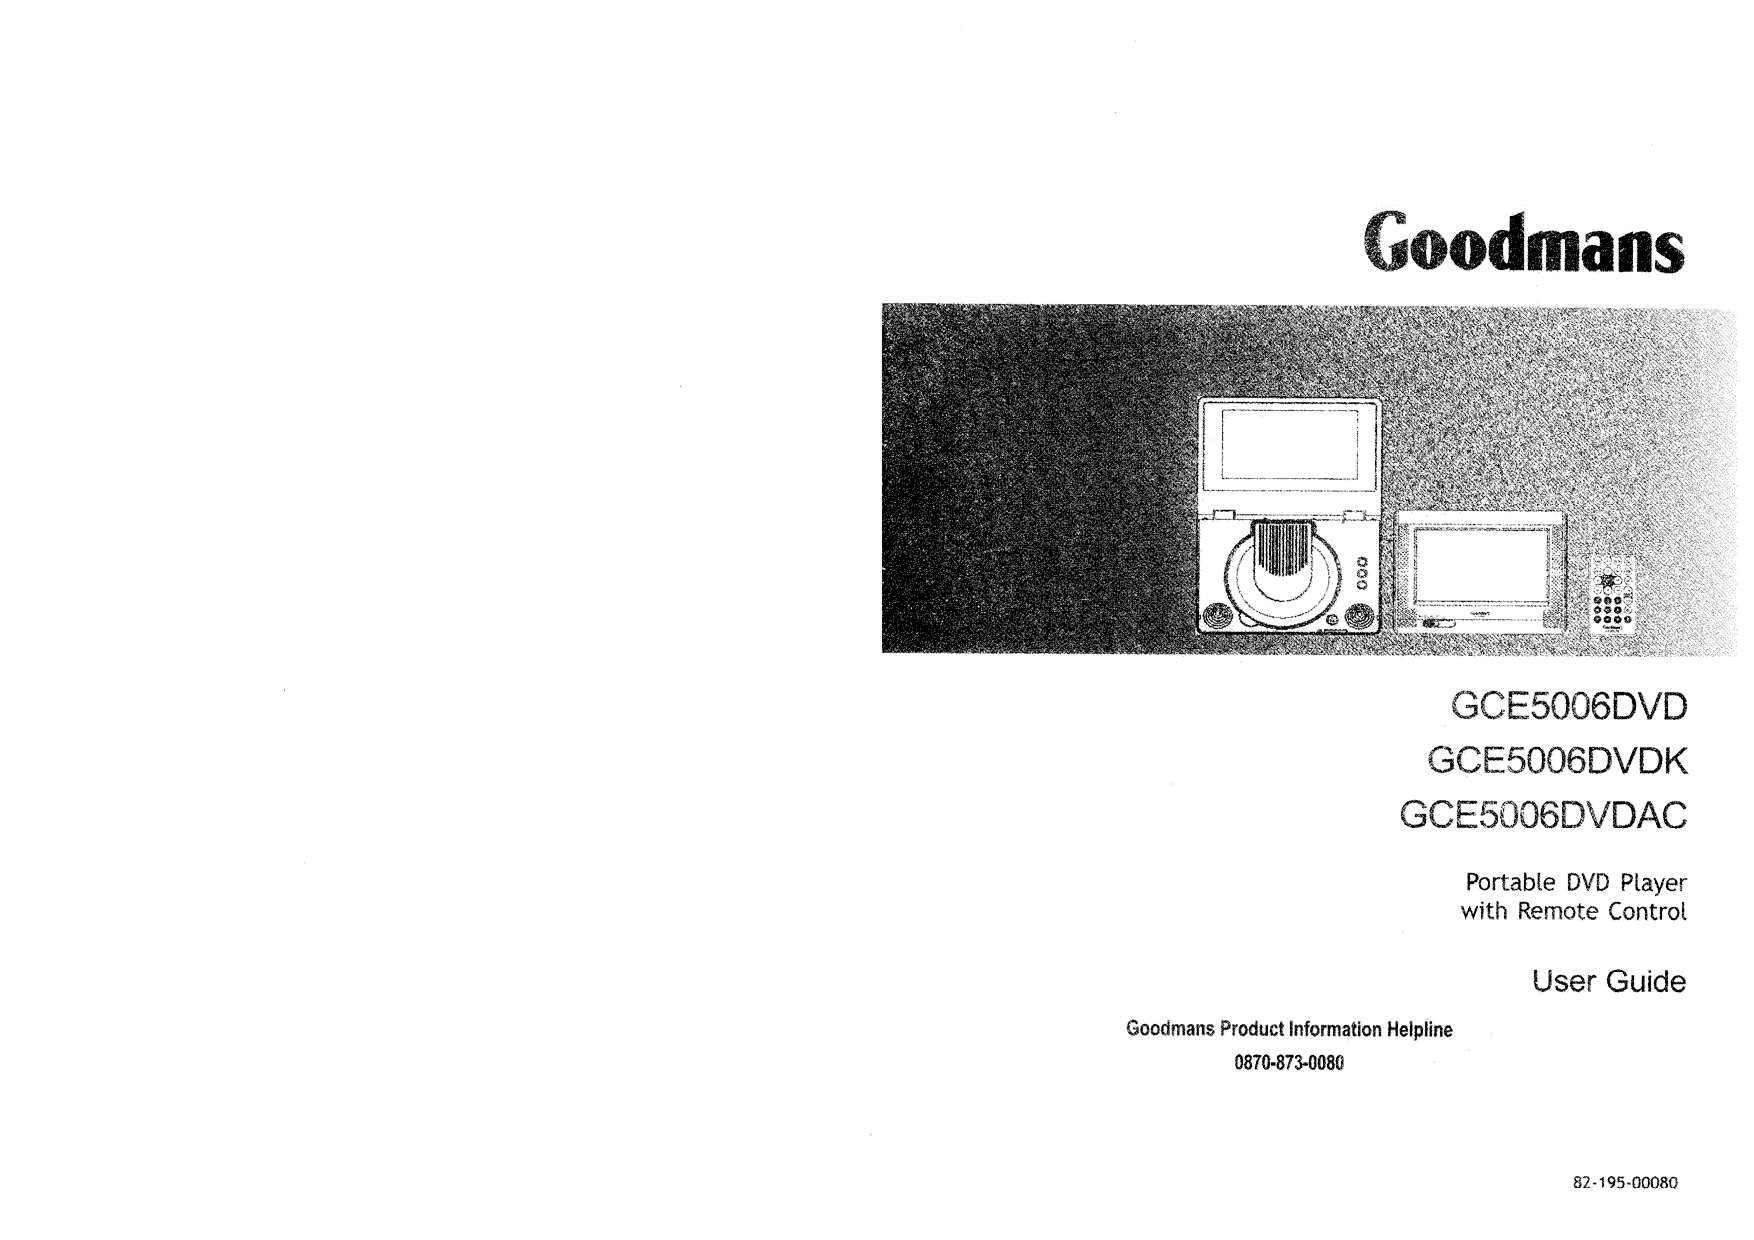 Goodmans GCE5006DVD, GCE5006DVDAC, GCE5006DVDK User Guide